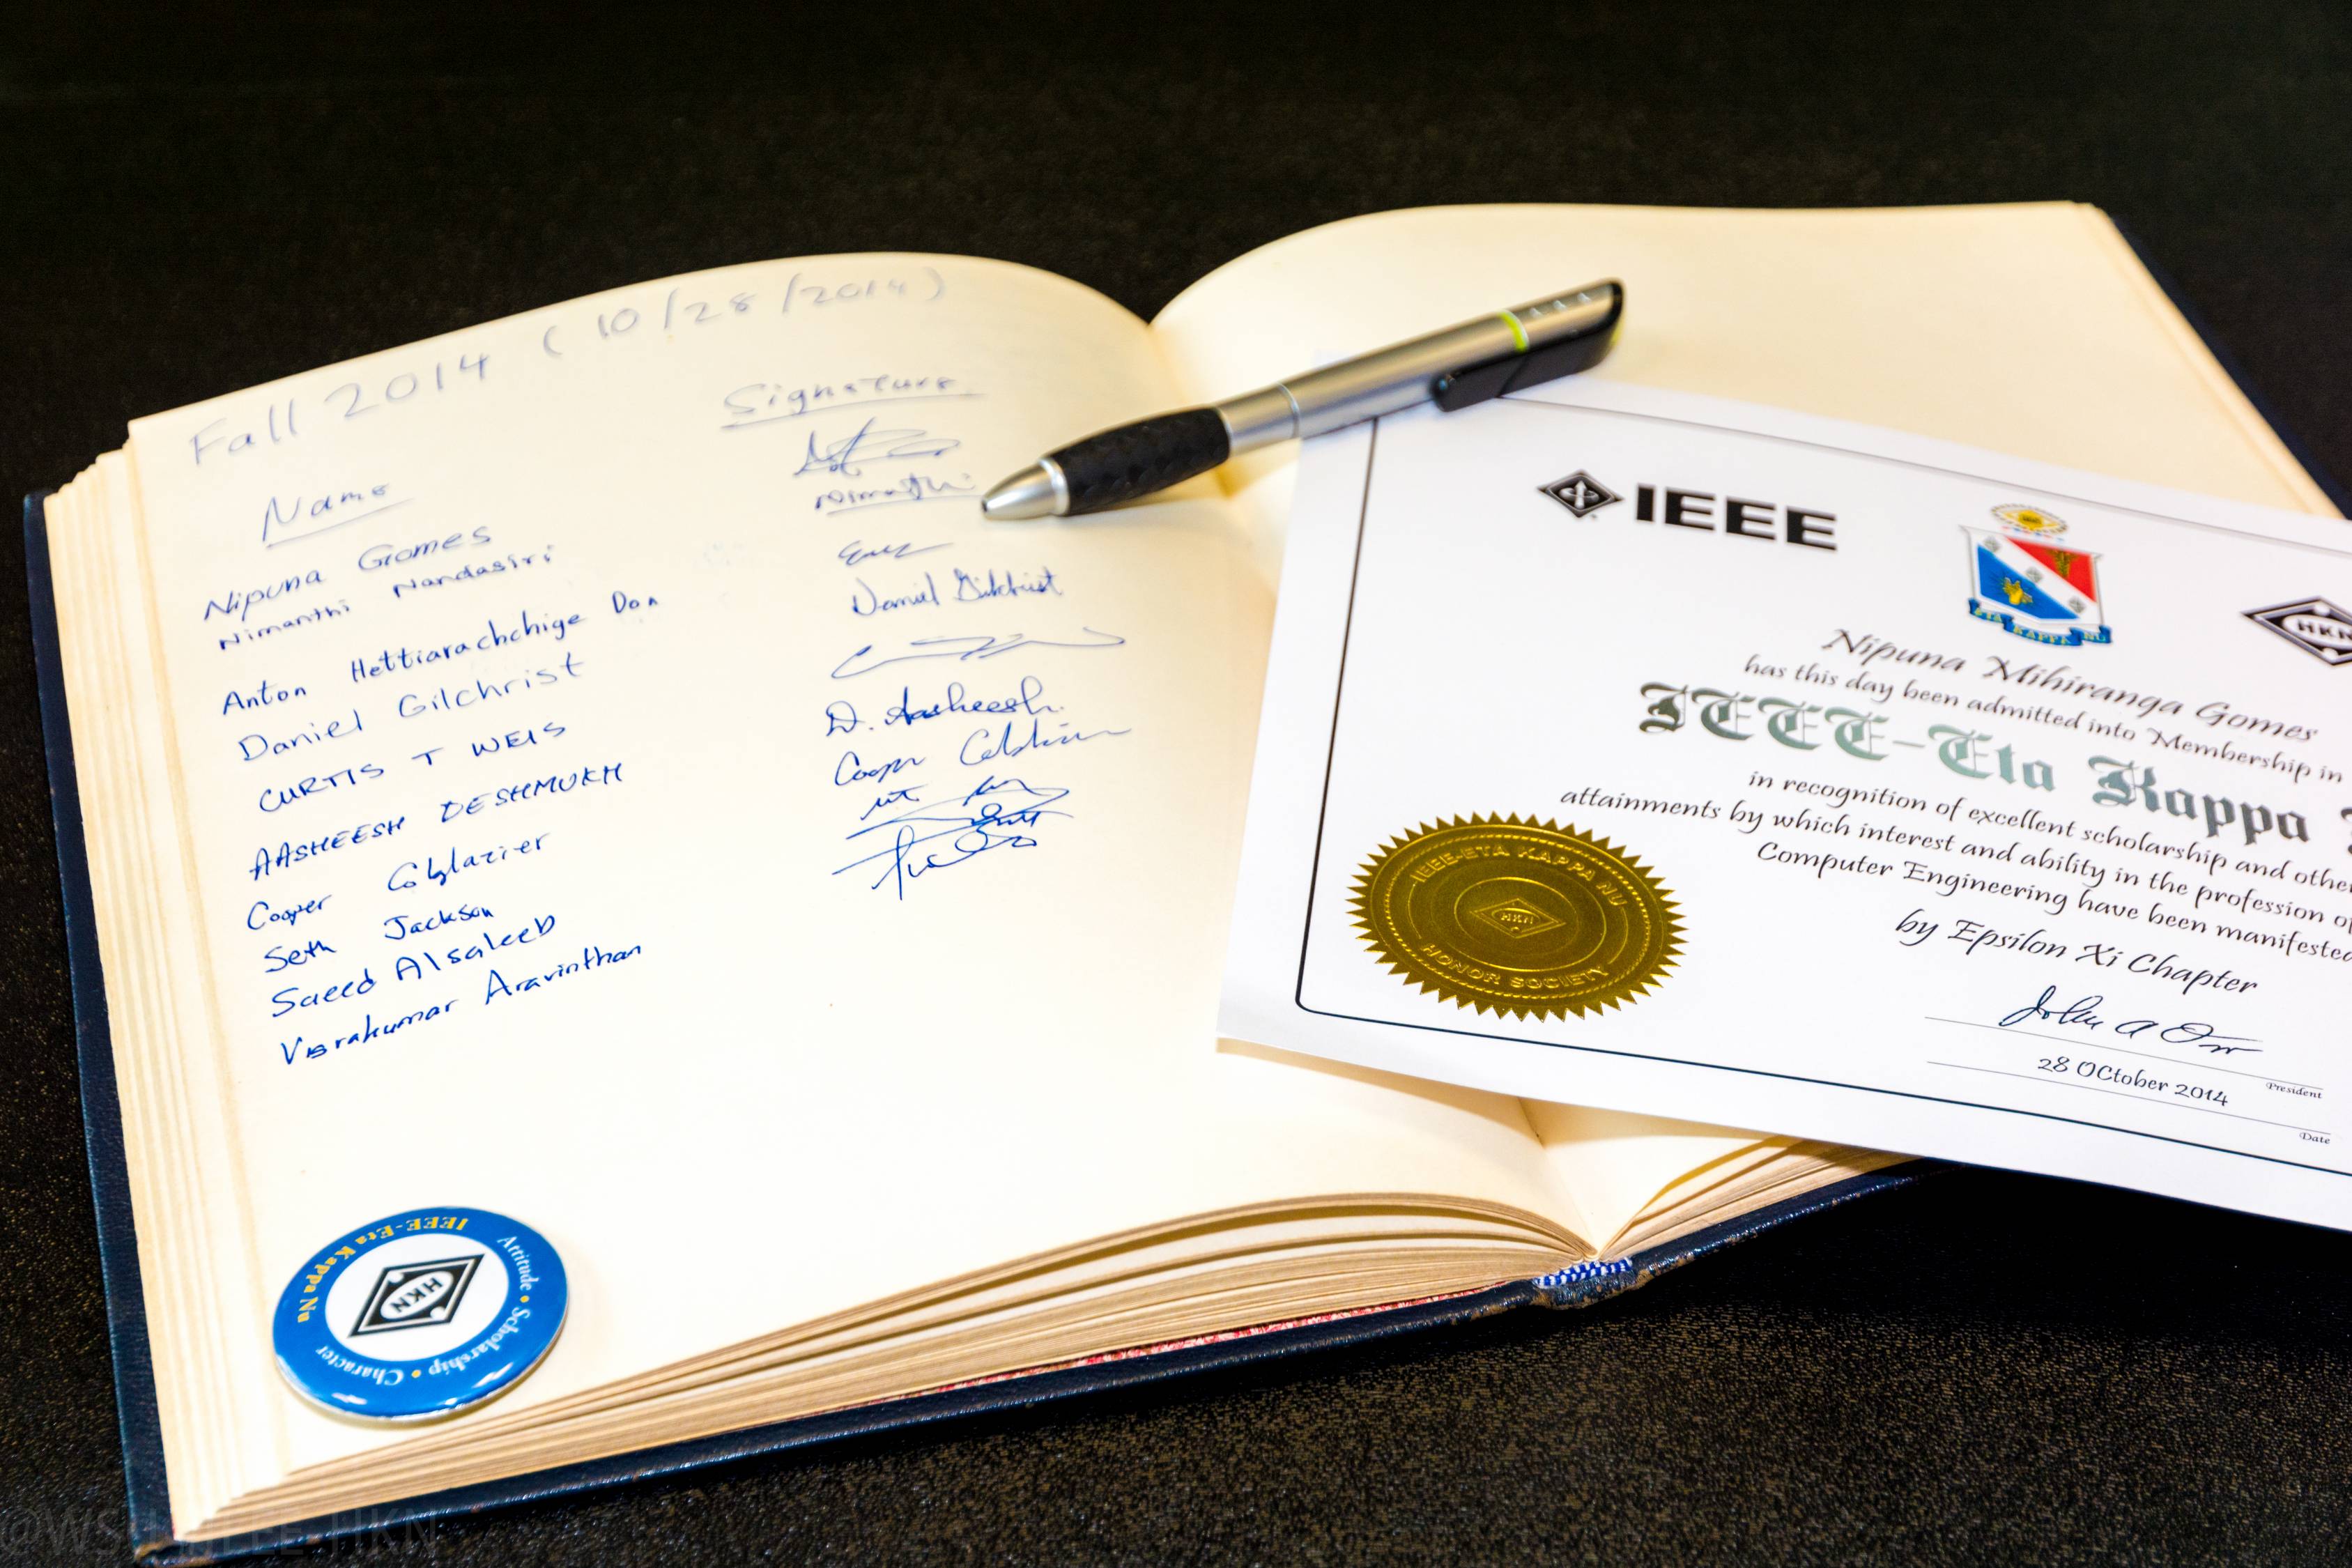 Fall 2014 initiate signature book and certificate. 